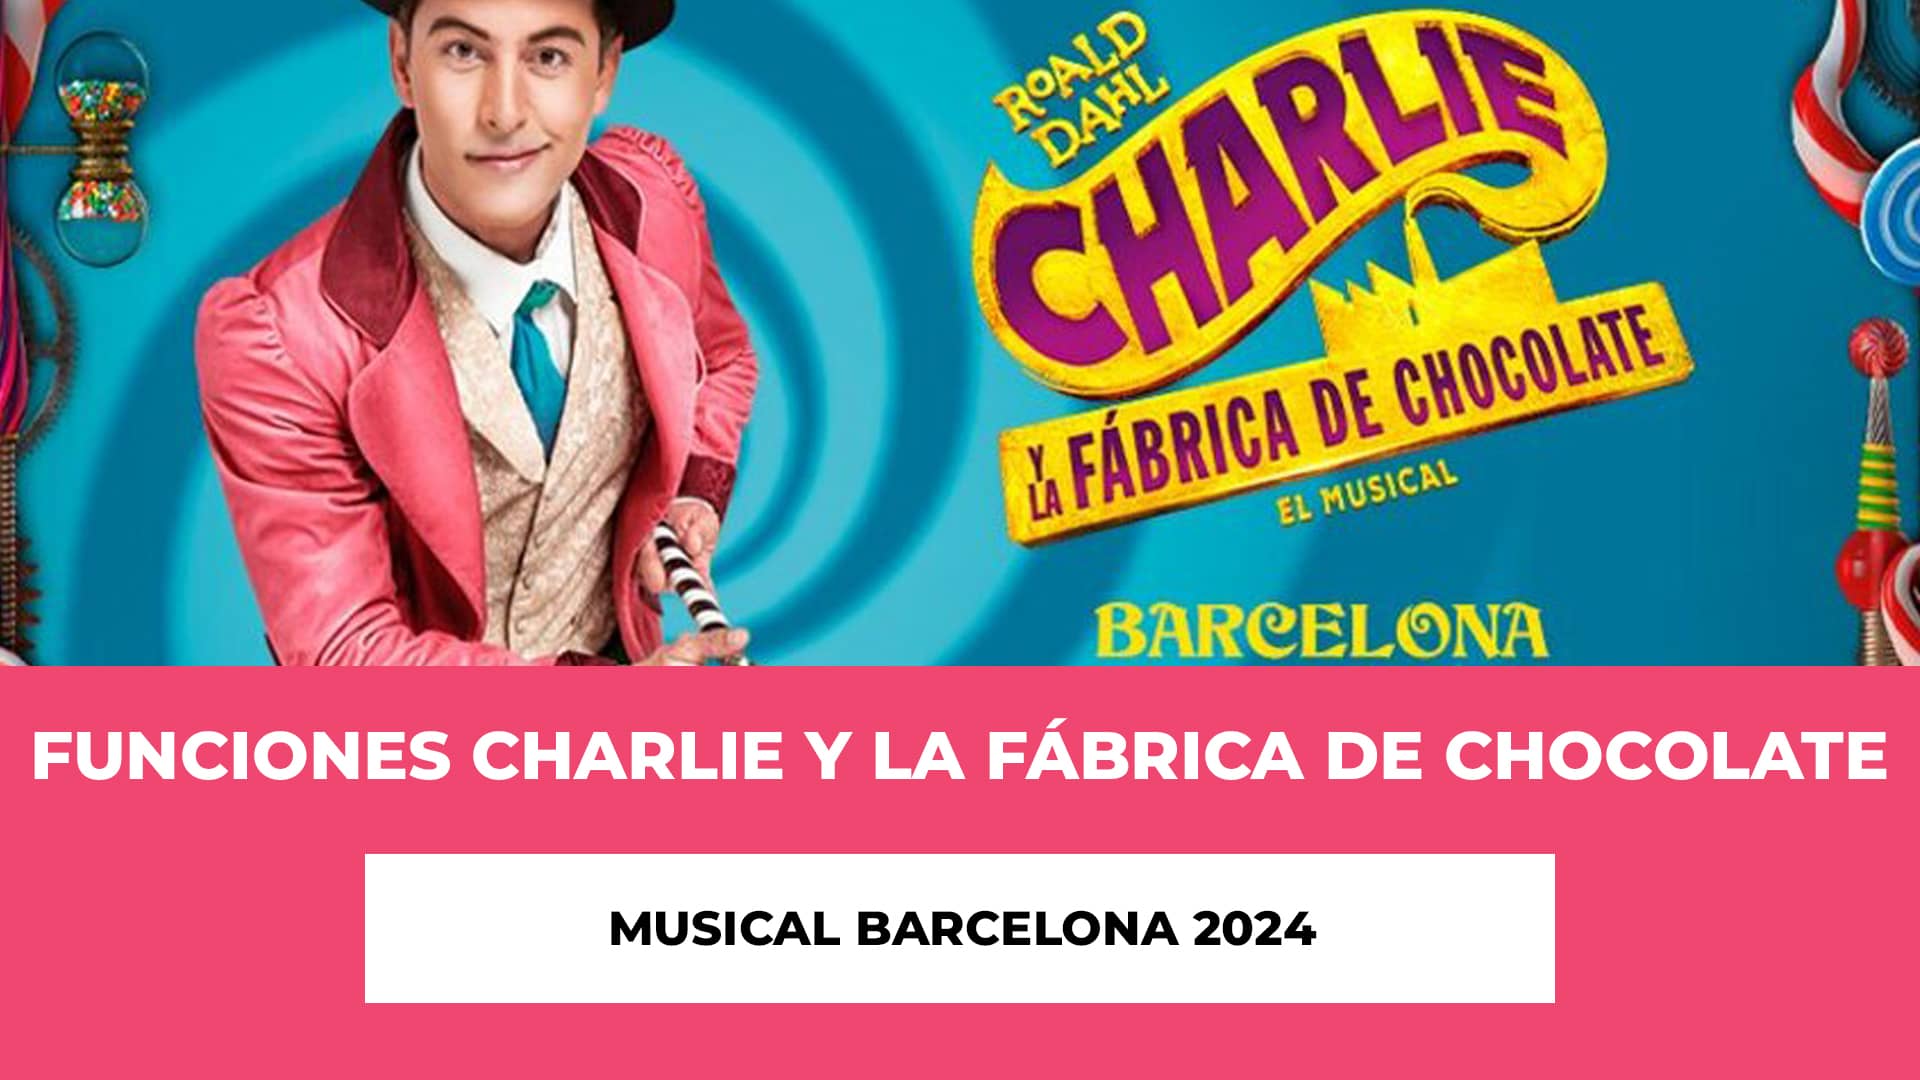 Descubre info de las Funciones Charlie y la fábrica de Chocolate Musical Barcelona 2024 - Tambien hablamos de los horarios, reparto y ubicación